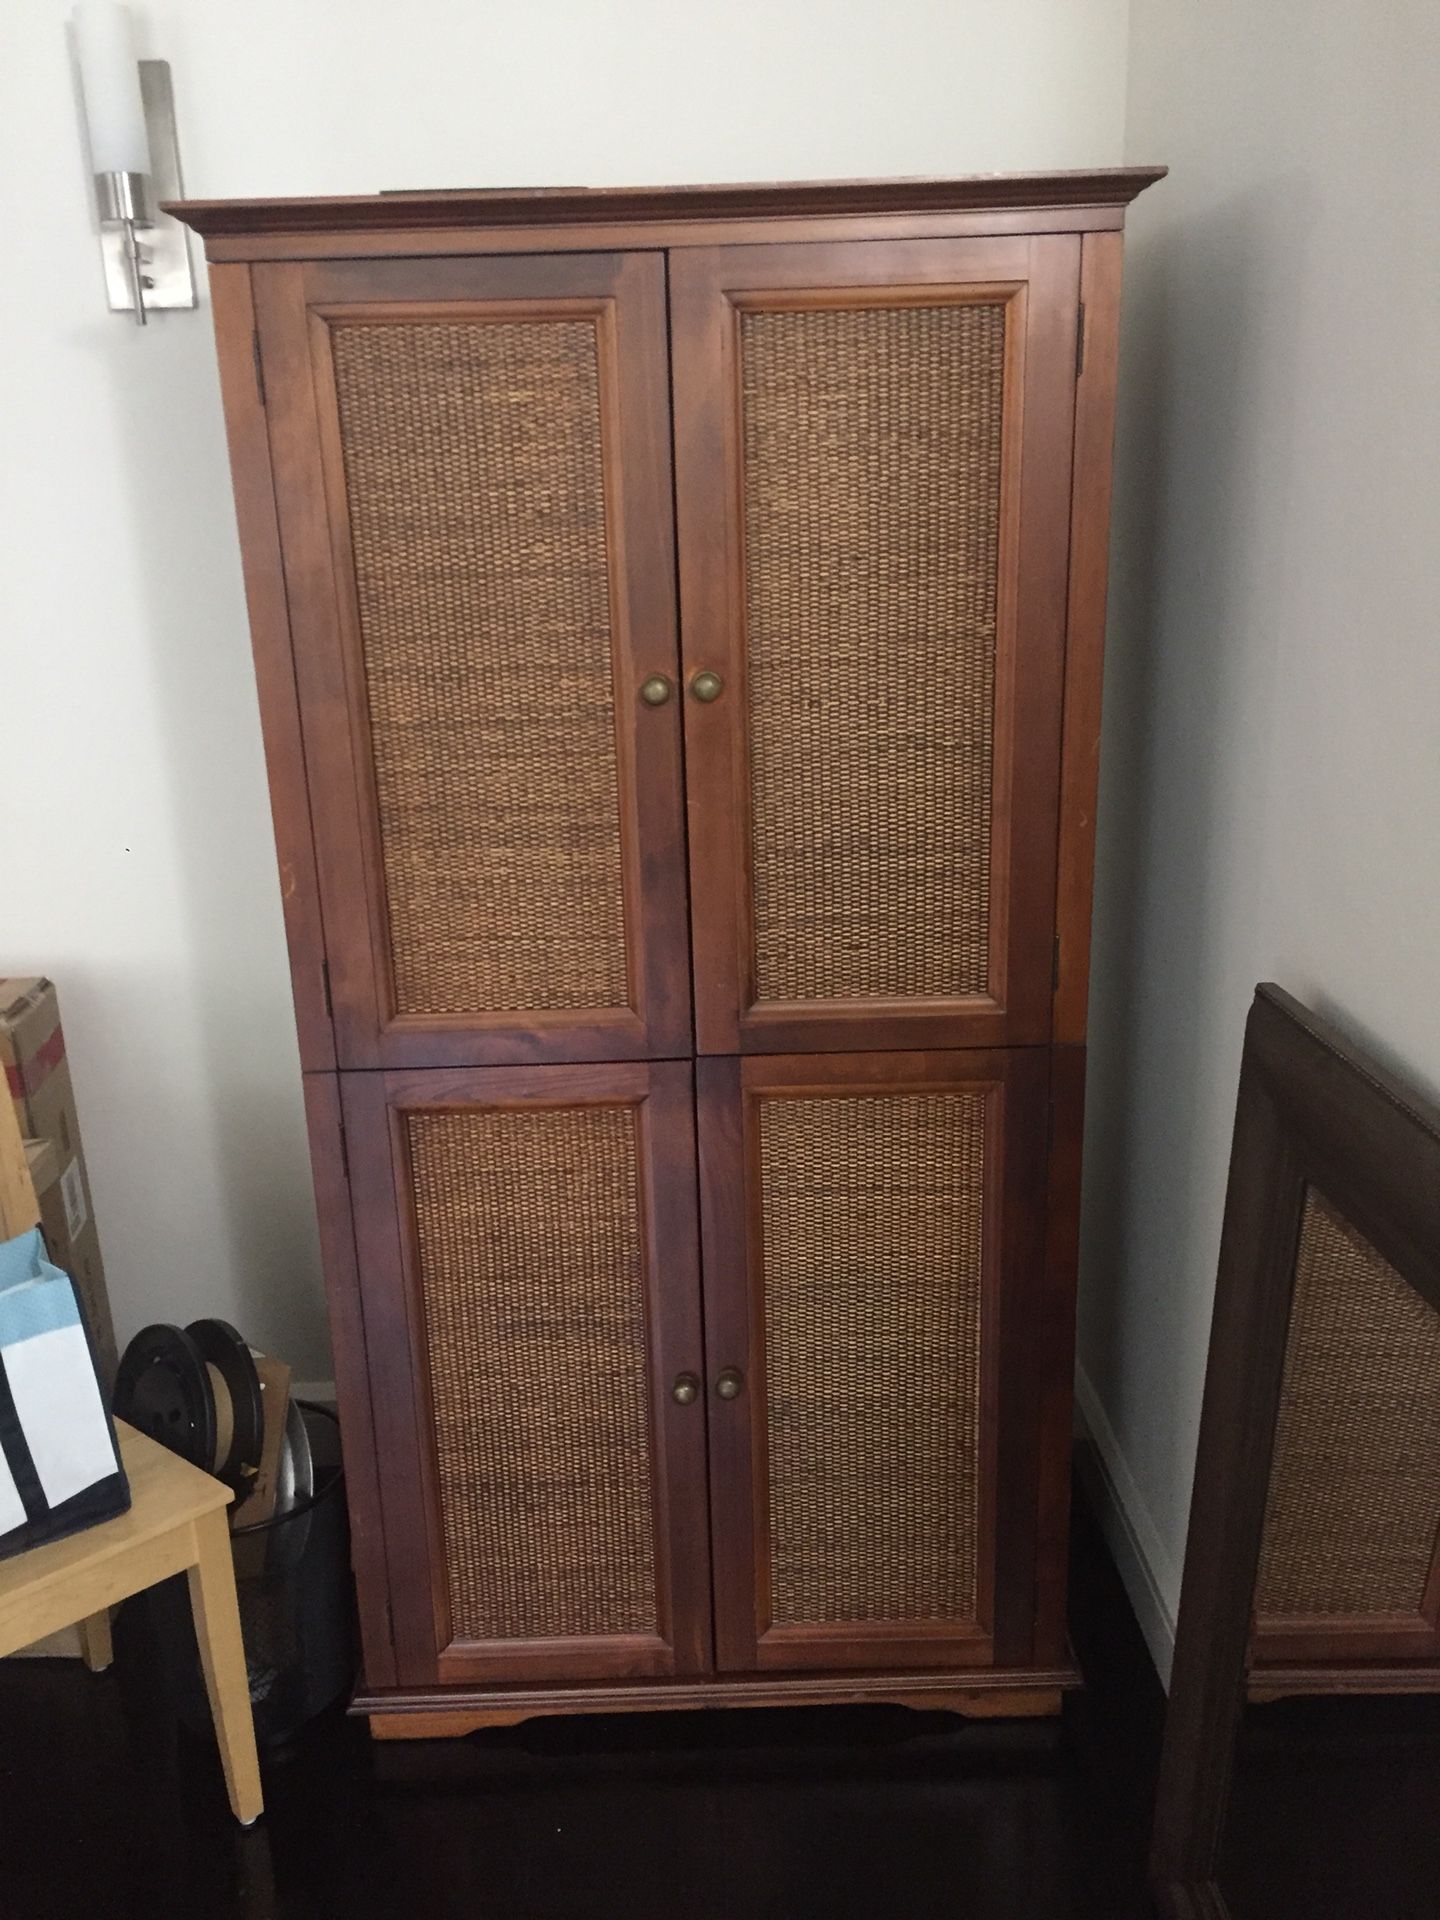 Classic wood paneled wardrobe